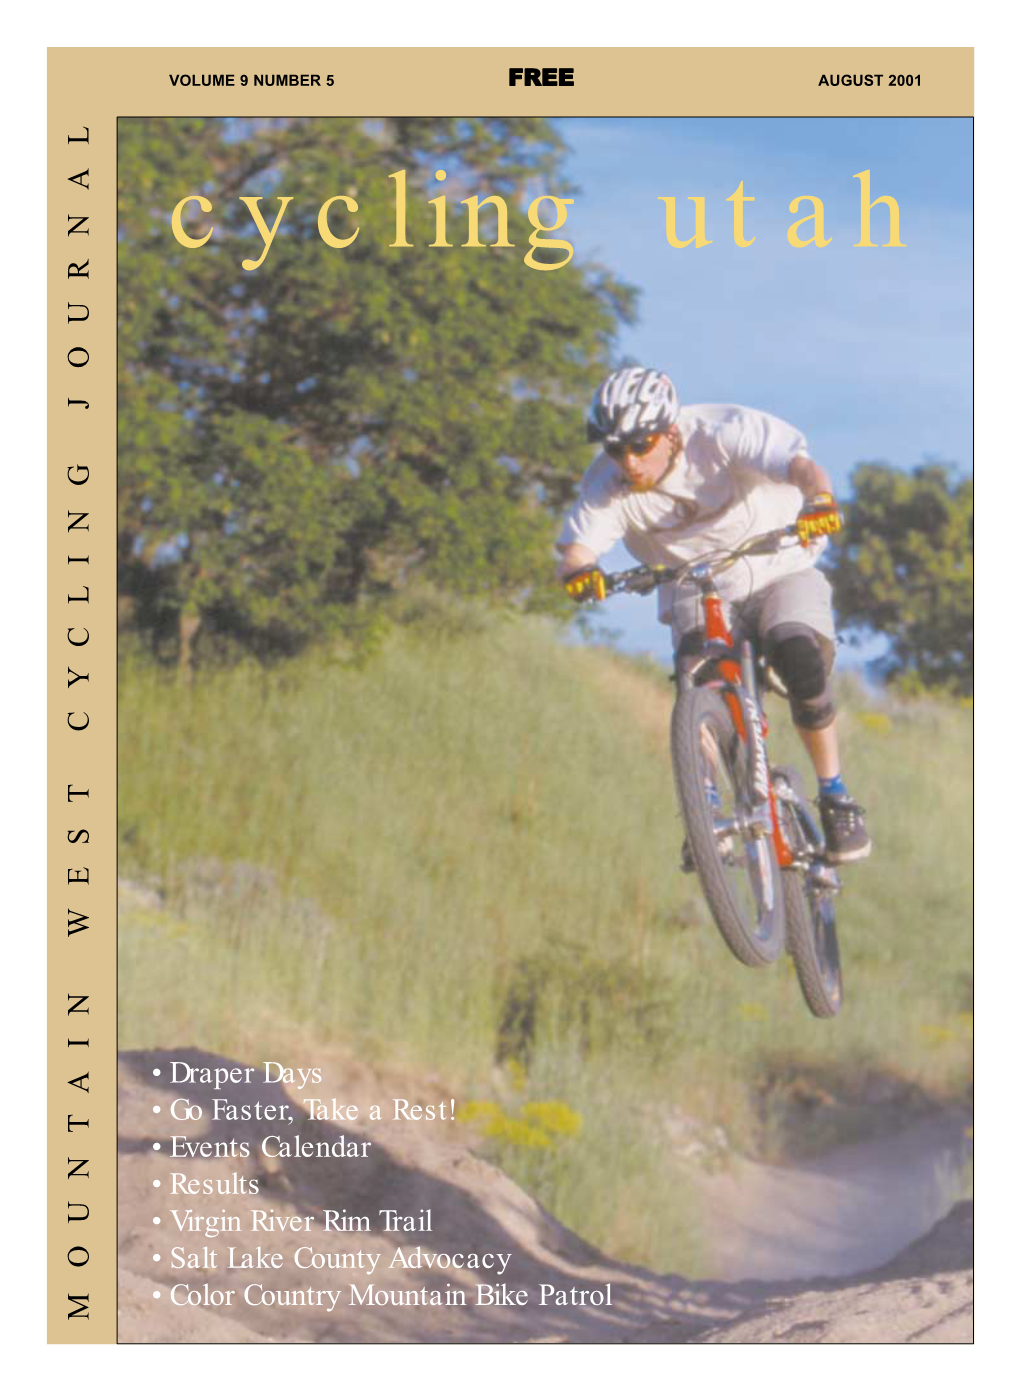 AUGUST 2001 Cycling Utah